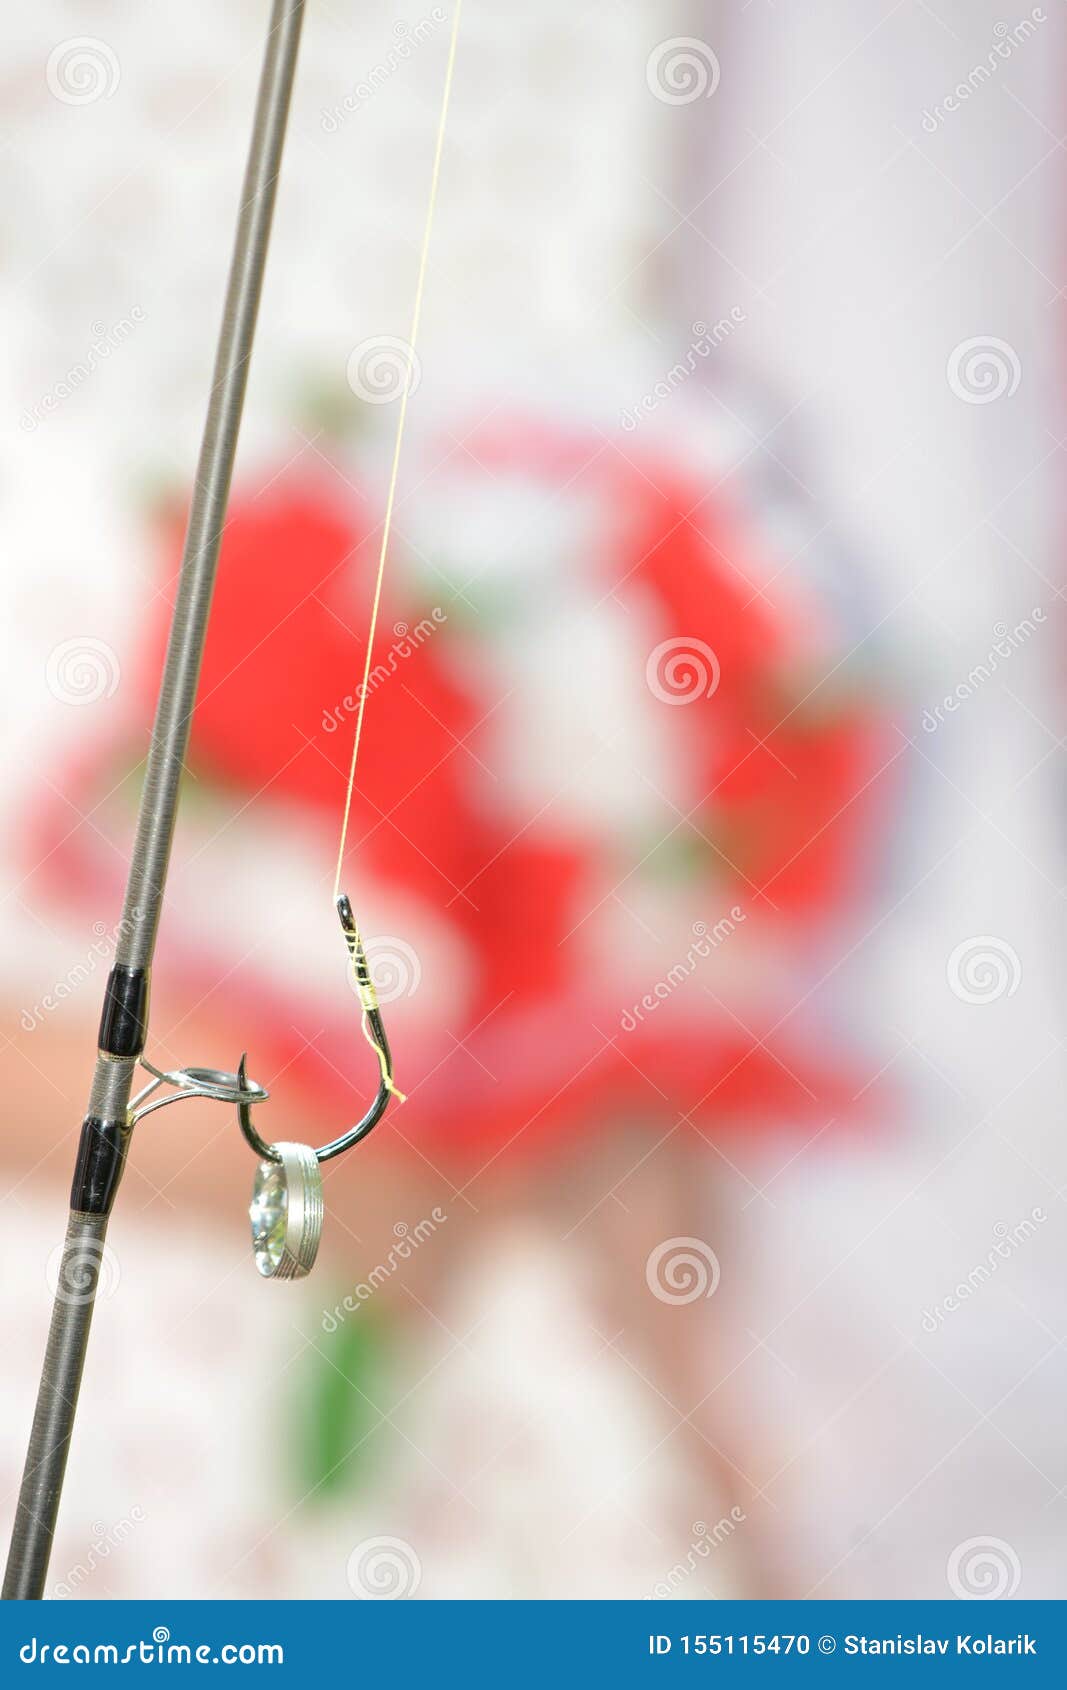 Wedding Rings on Fishing Hook Stock Photo - Image of fiance